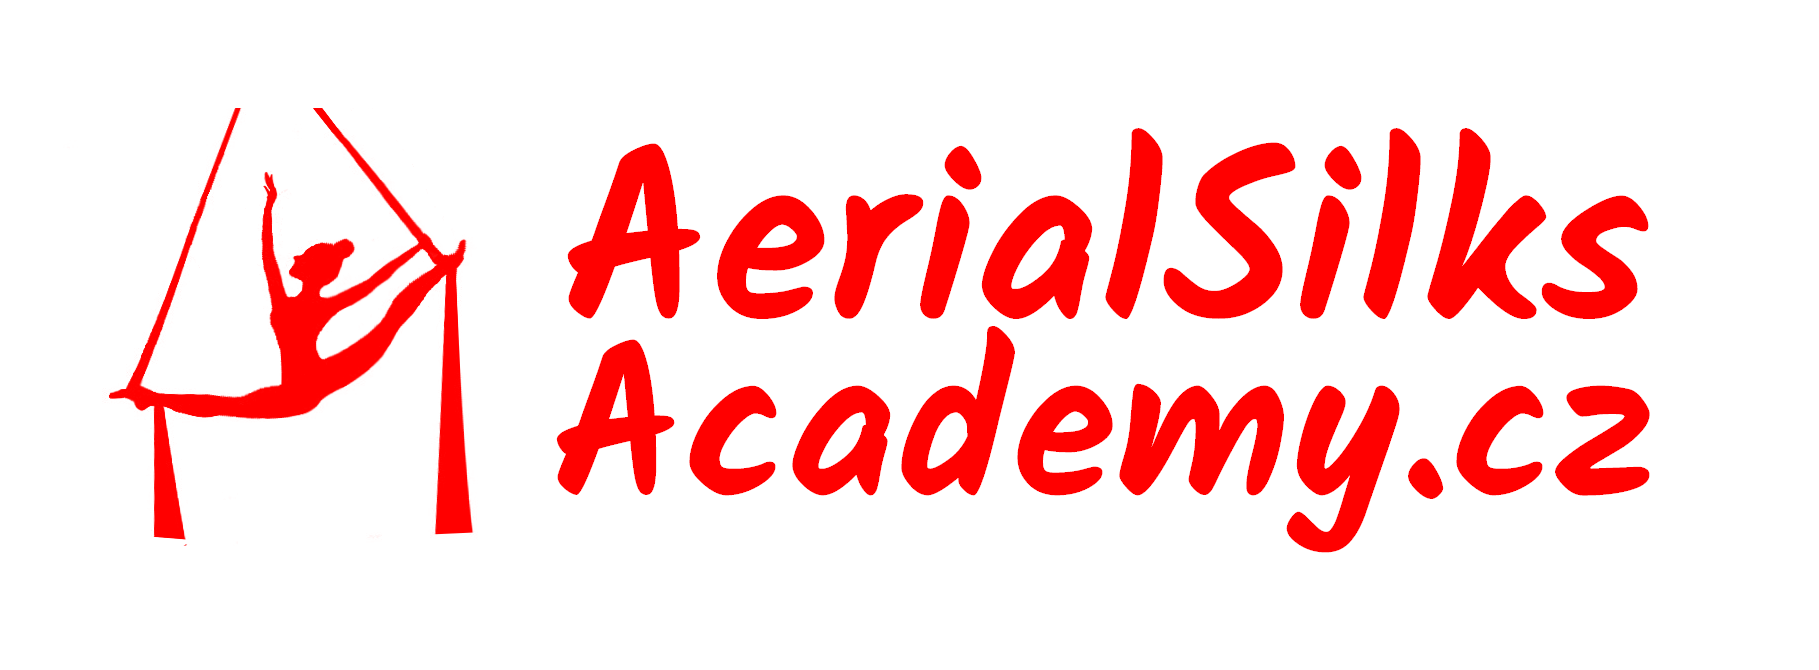 Aerial Silks Academy